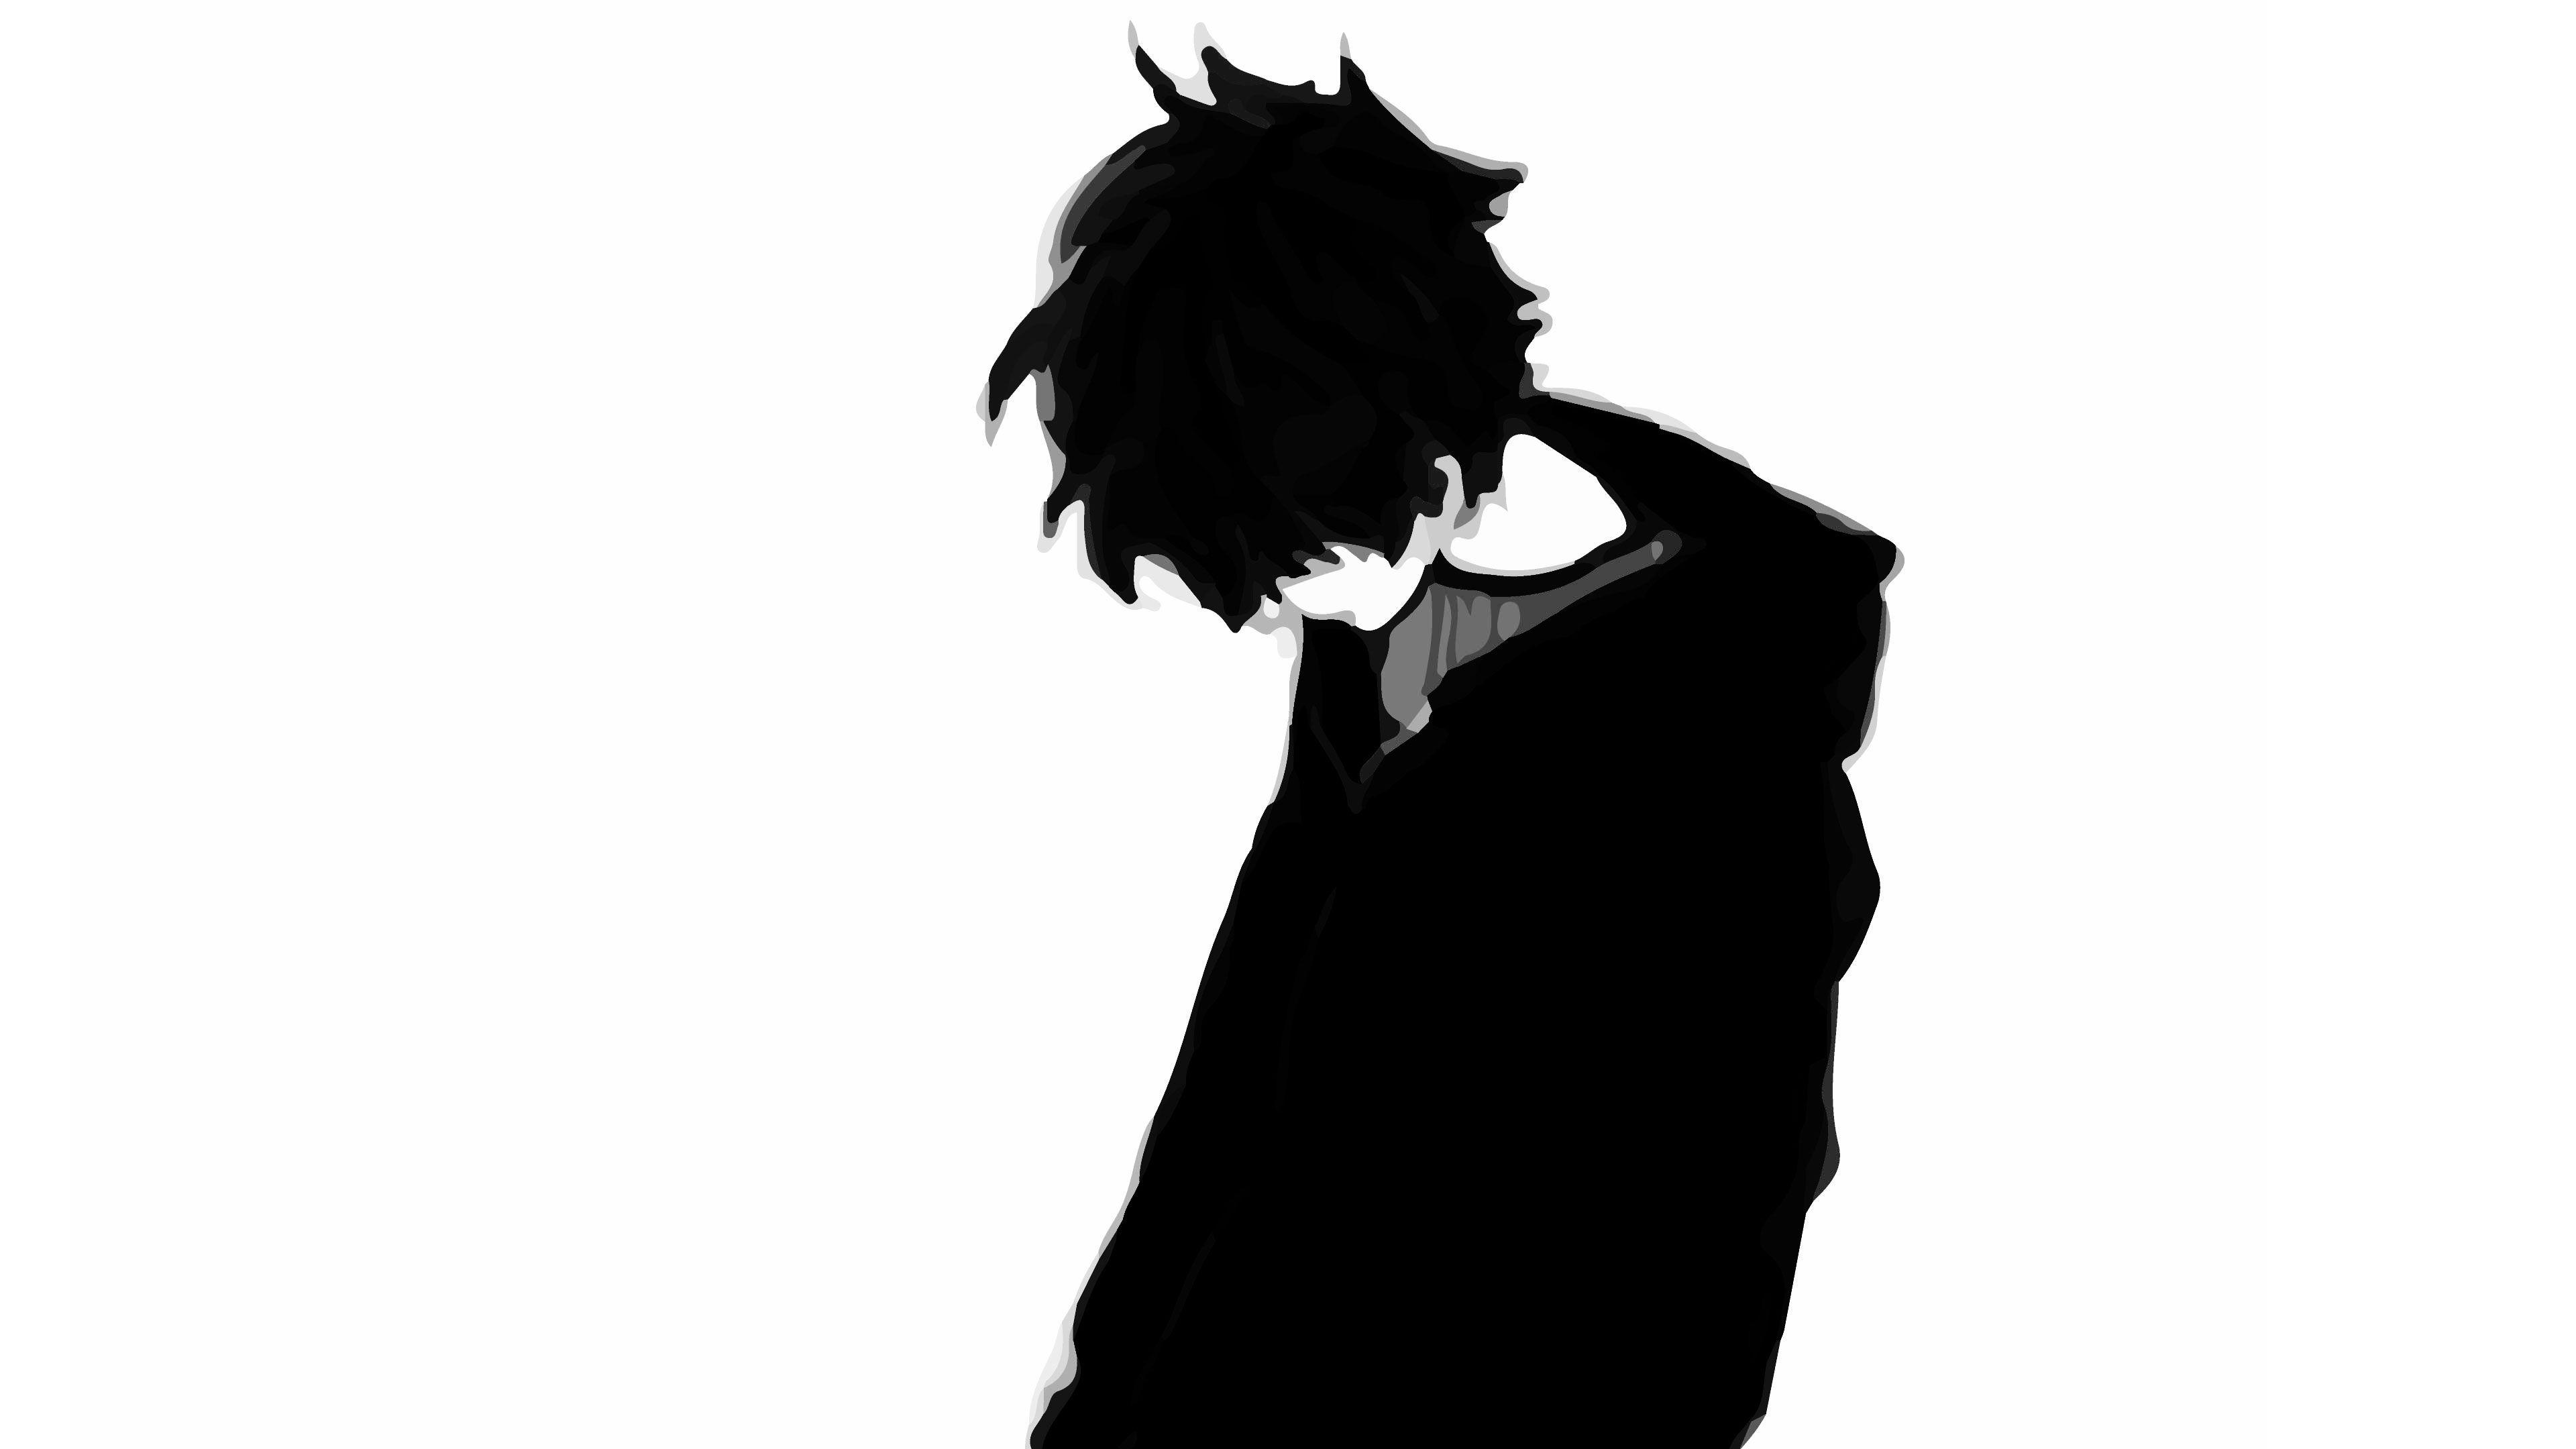 Hình ảnh cậu bé anime buồn 3840x2160.  Cậu bé hoạt hình buồn một mình Pic.  Buồn thay.  CỦA TÔI